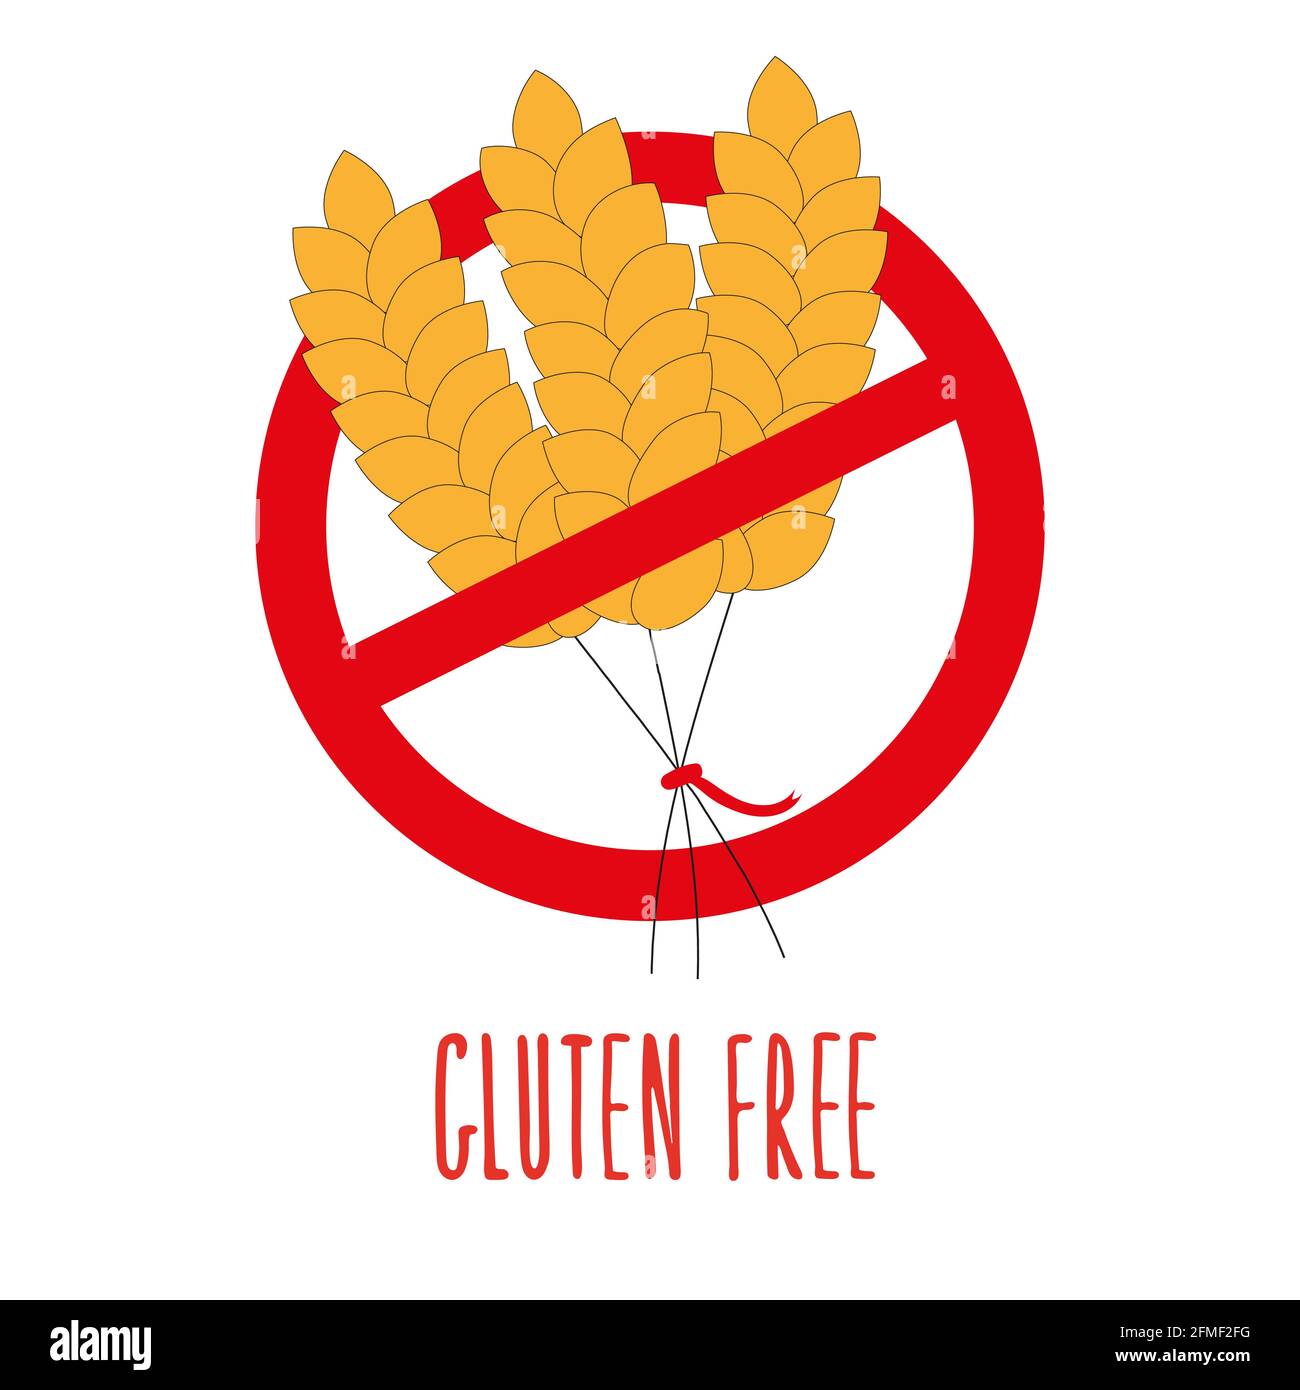 Gluten free label. No wheat symbol. Stock Vector